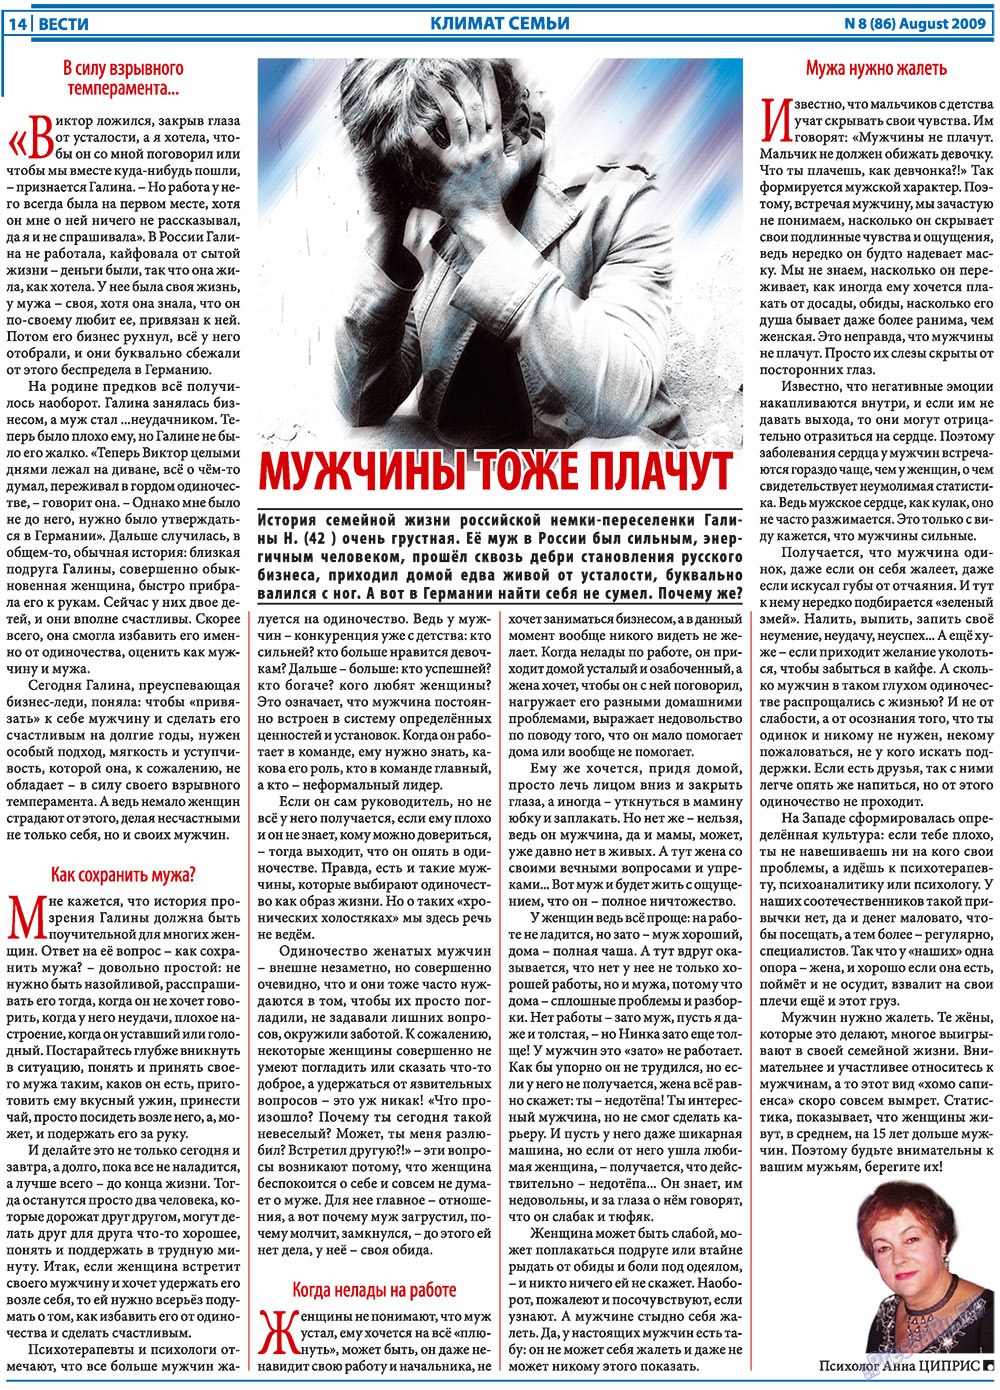 Вести, газета. 2009 №8 стр.14